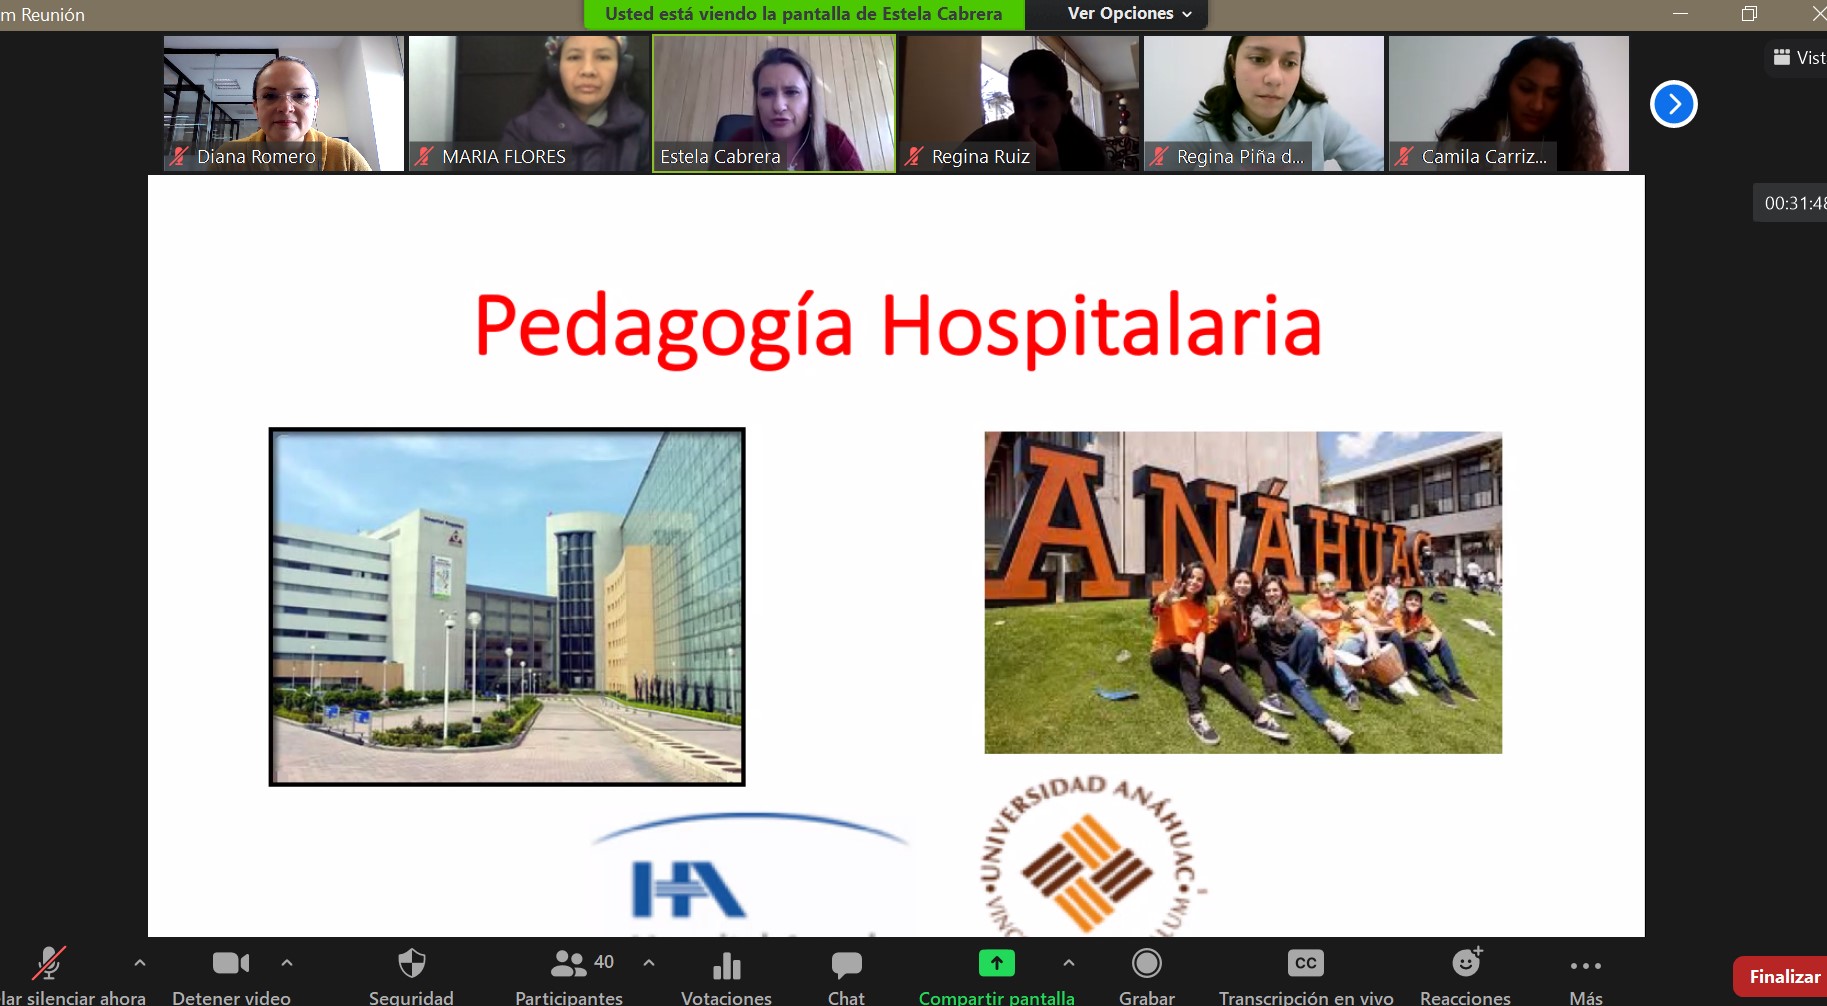 Plática sobre pedagogía hospitalaria del Hospital Ángeles con alumnos